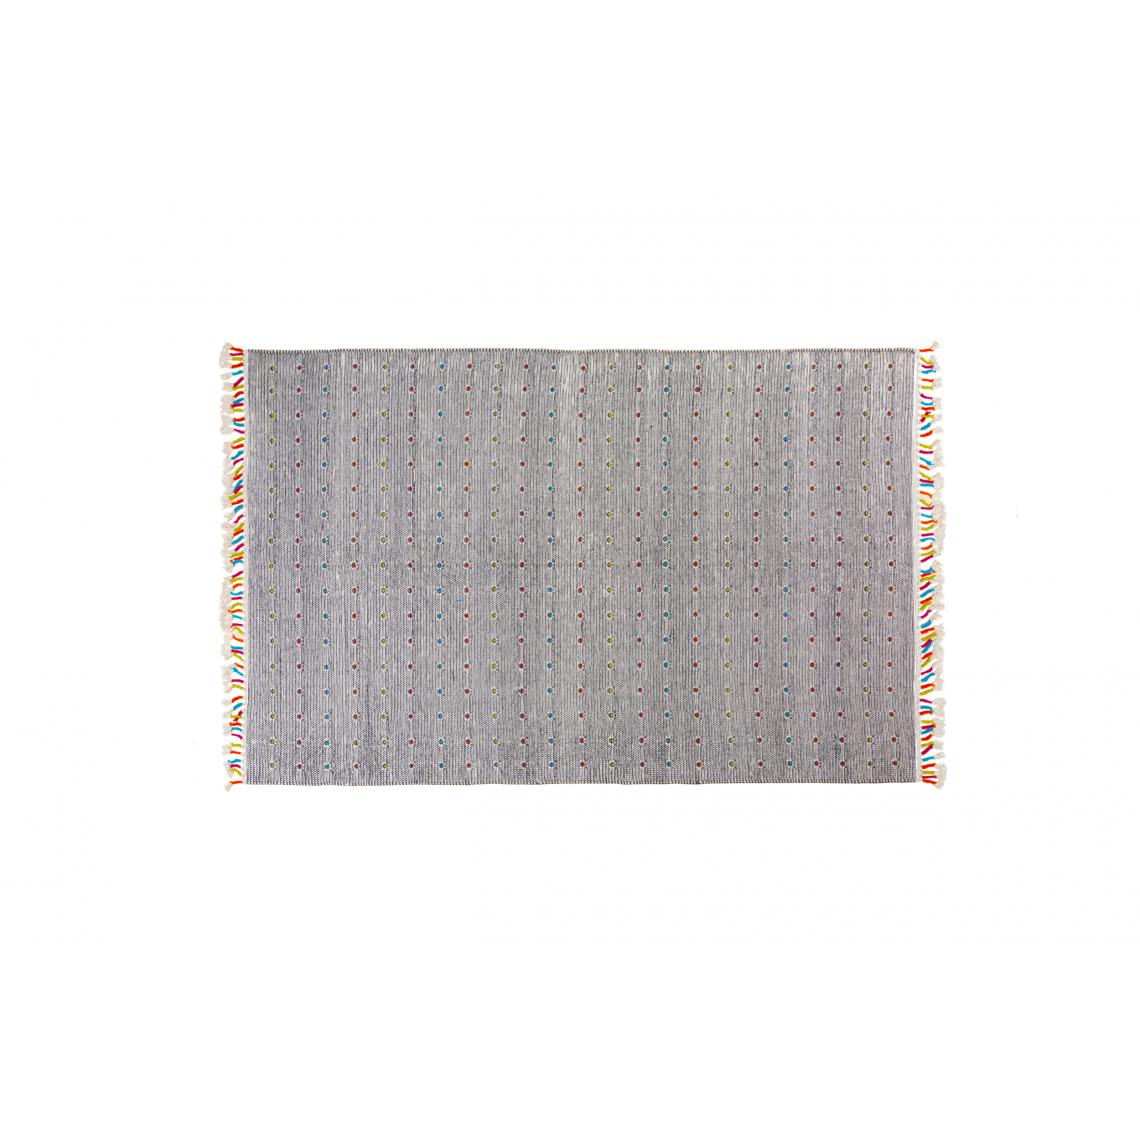 Alter - Tapis Texas moderne, style kilim, 100% coton, gris, 170x110cm - Tapis